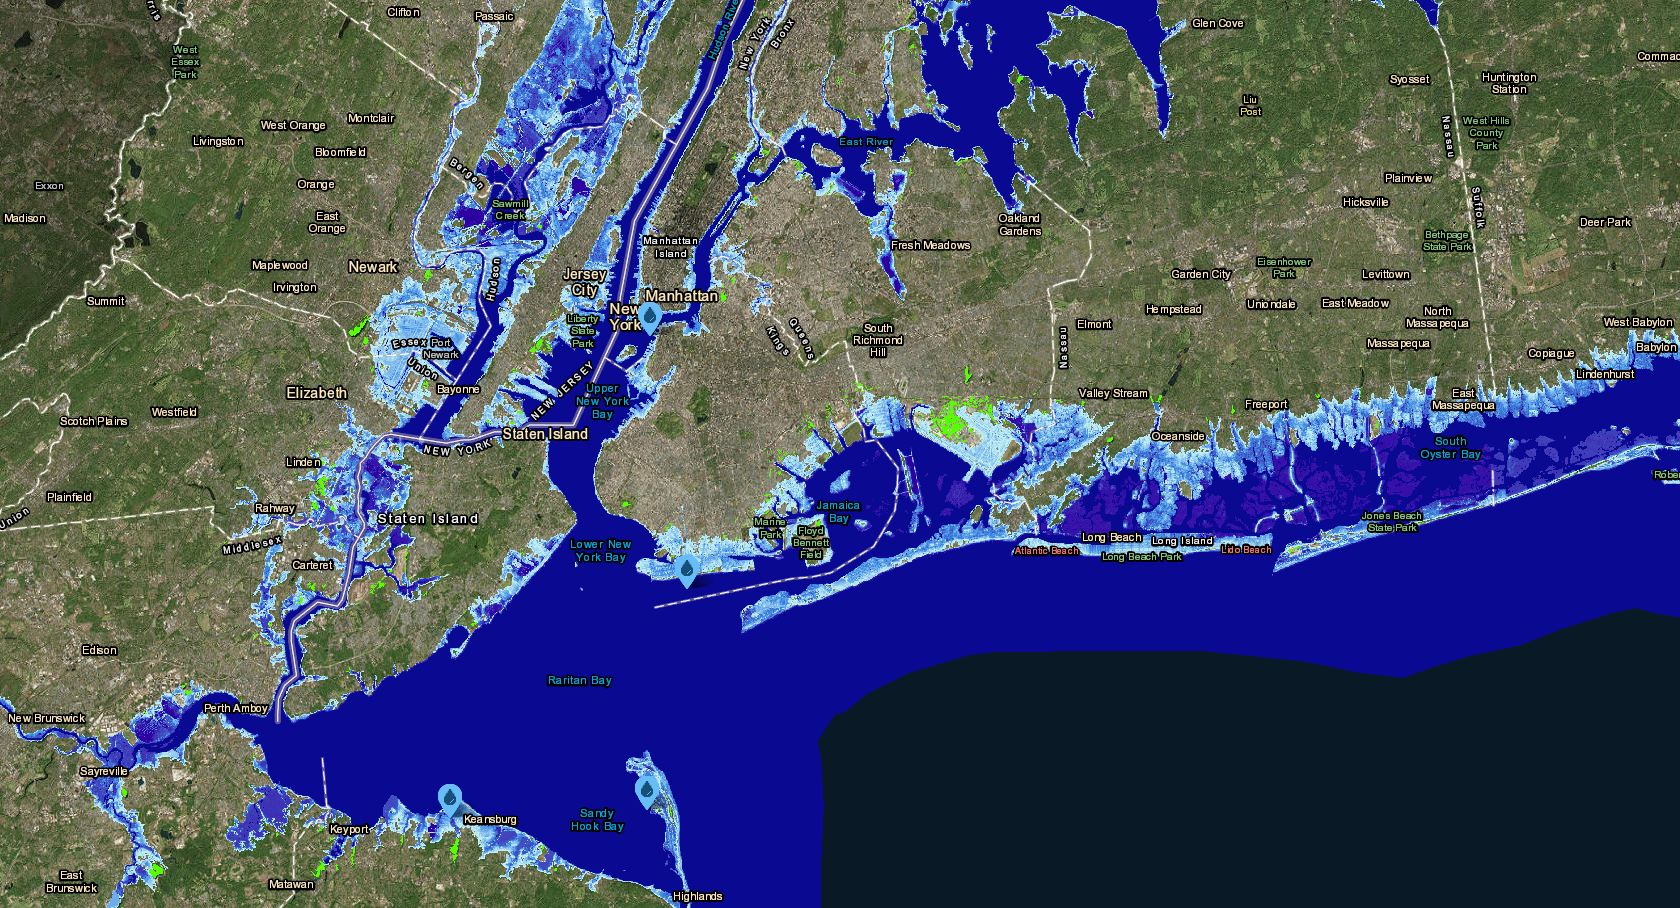 Partes de Nueva Jersey y Nueva York con 30 centímetros de aumento del nivel del mar. Las áreas de color azul claro muestran la extensión de las inundaciones permanentes. Imagen: NOAA Sea Level Rise Viewer.